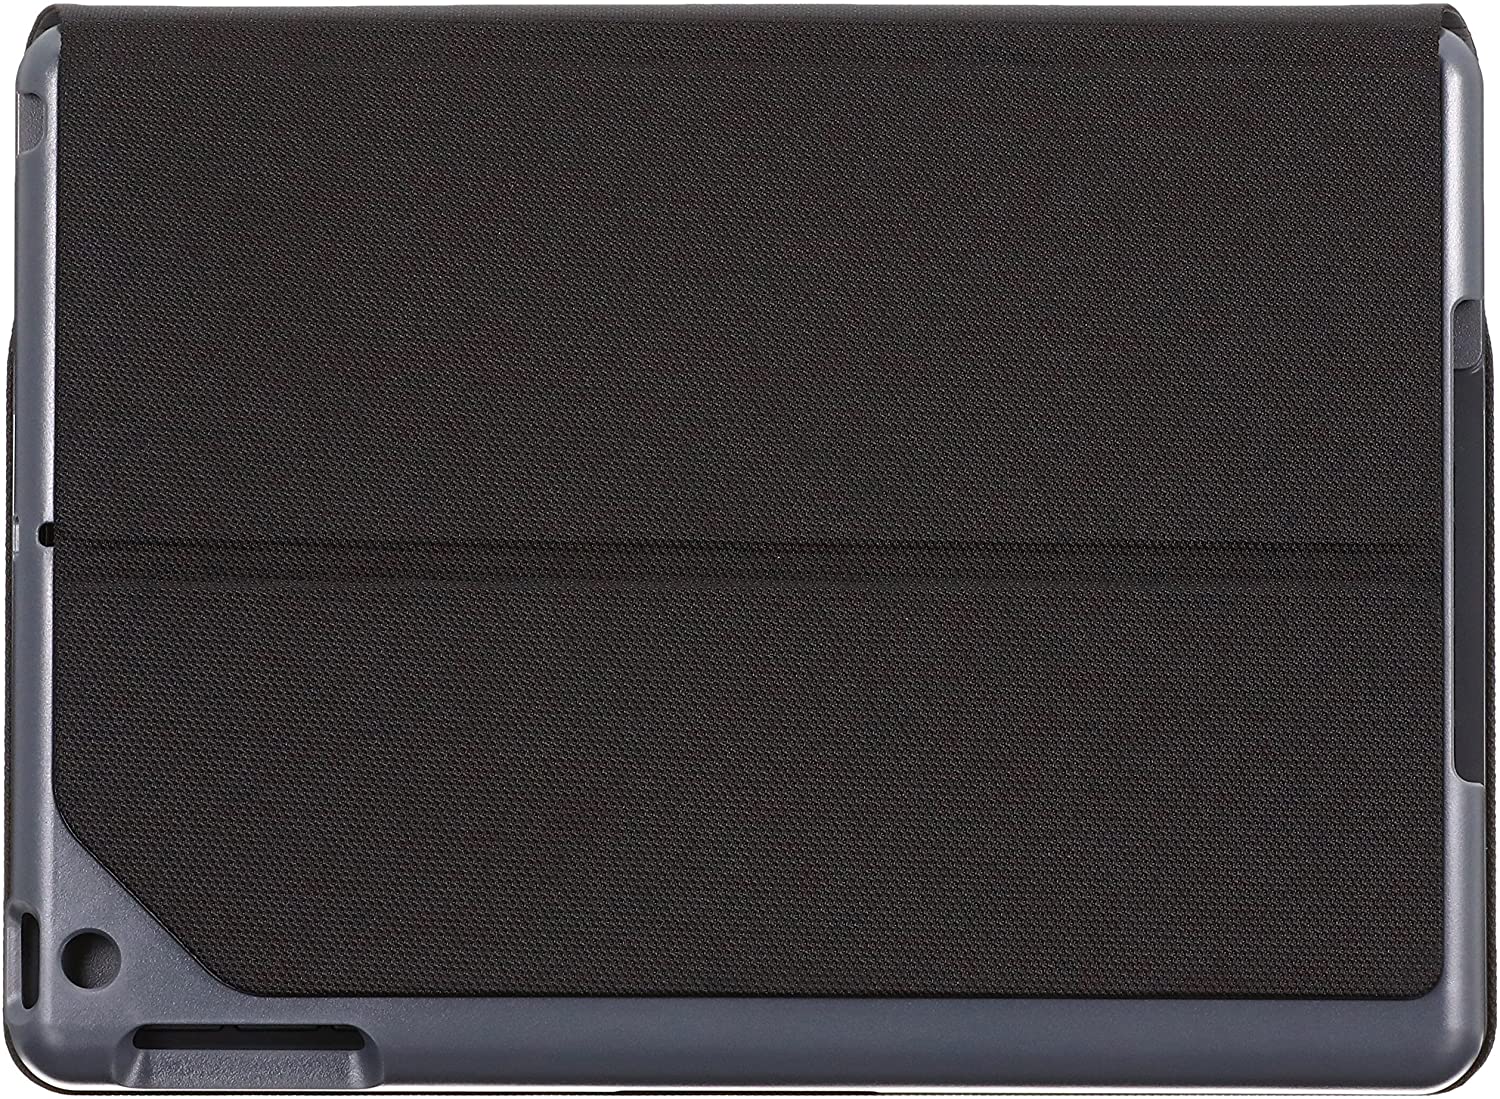 ロジクール タブレットキーボード ブラック Bluetooth キーボード一体型ケース SLIM FOLIO iK1052BK iPad 9.7インチ対応 第5世代 2017年リリース用キーボード 【中古】